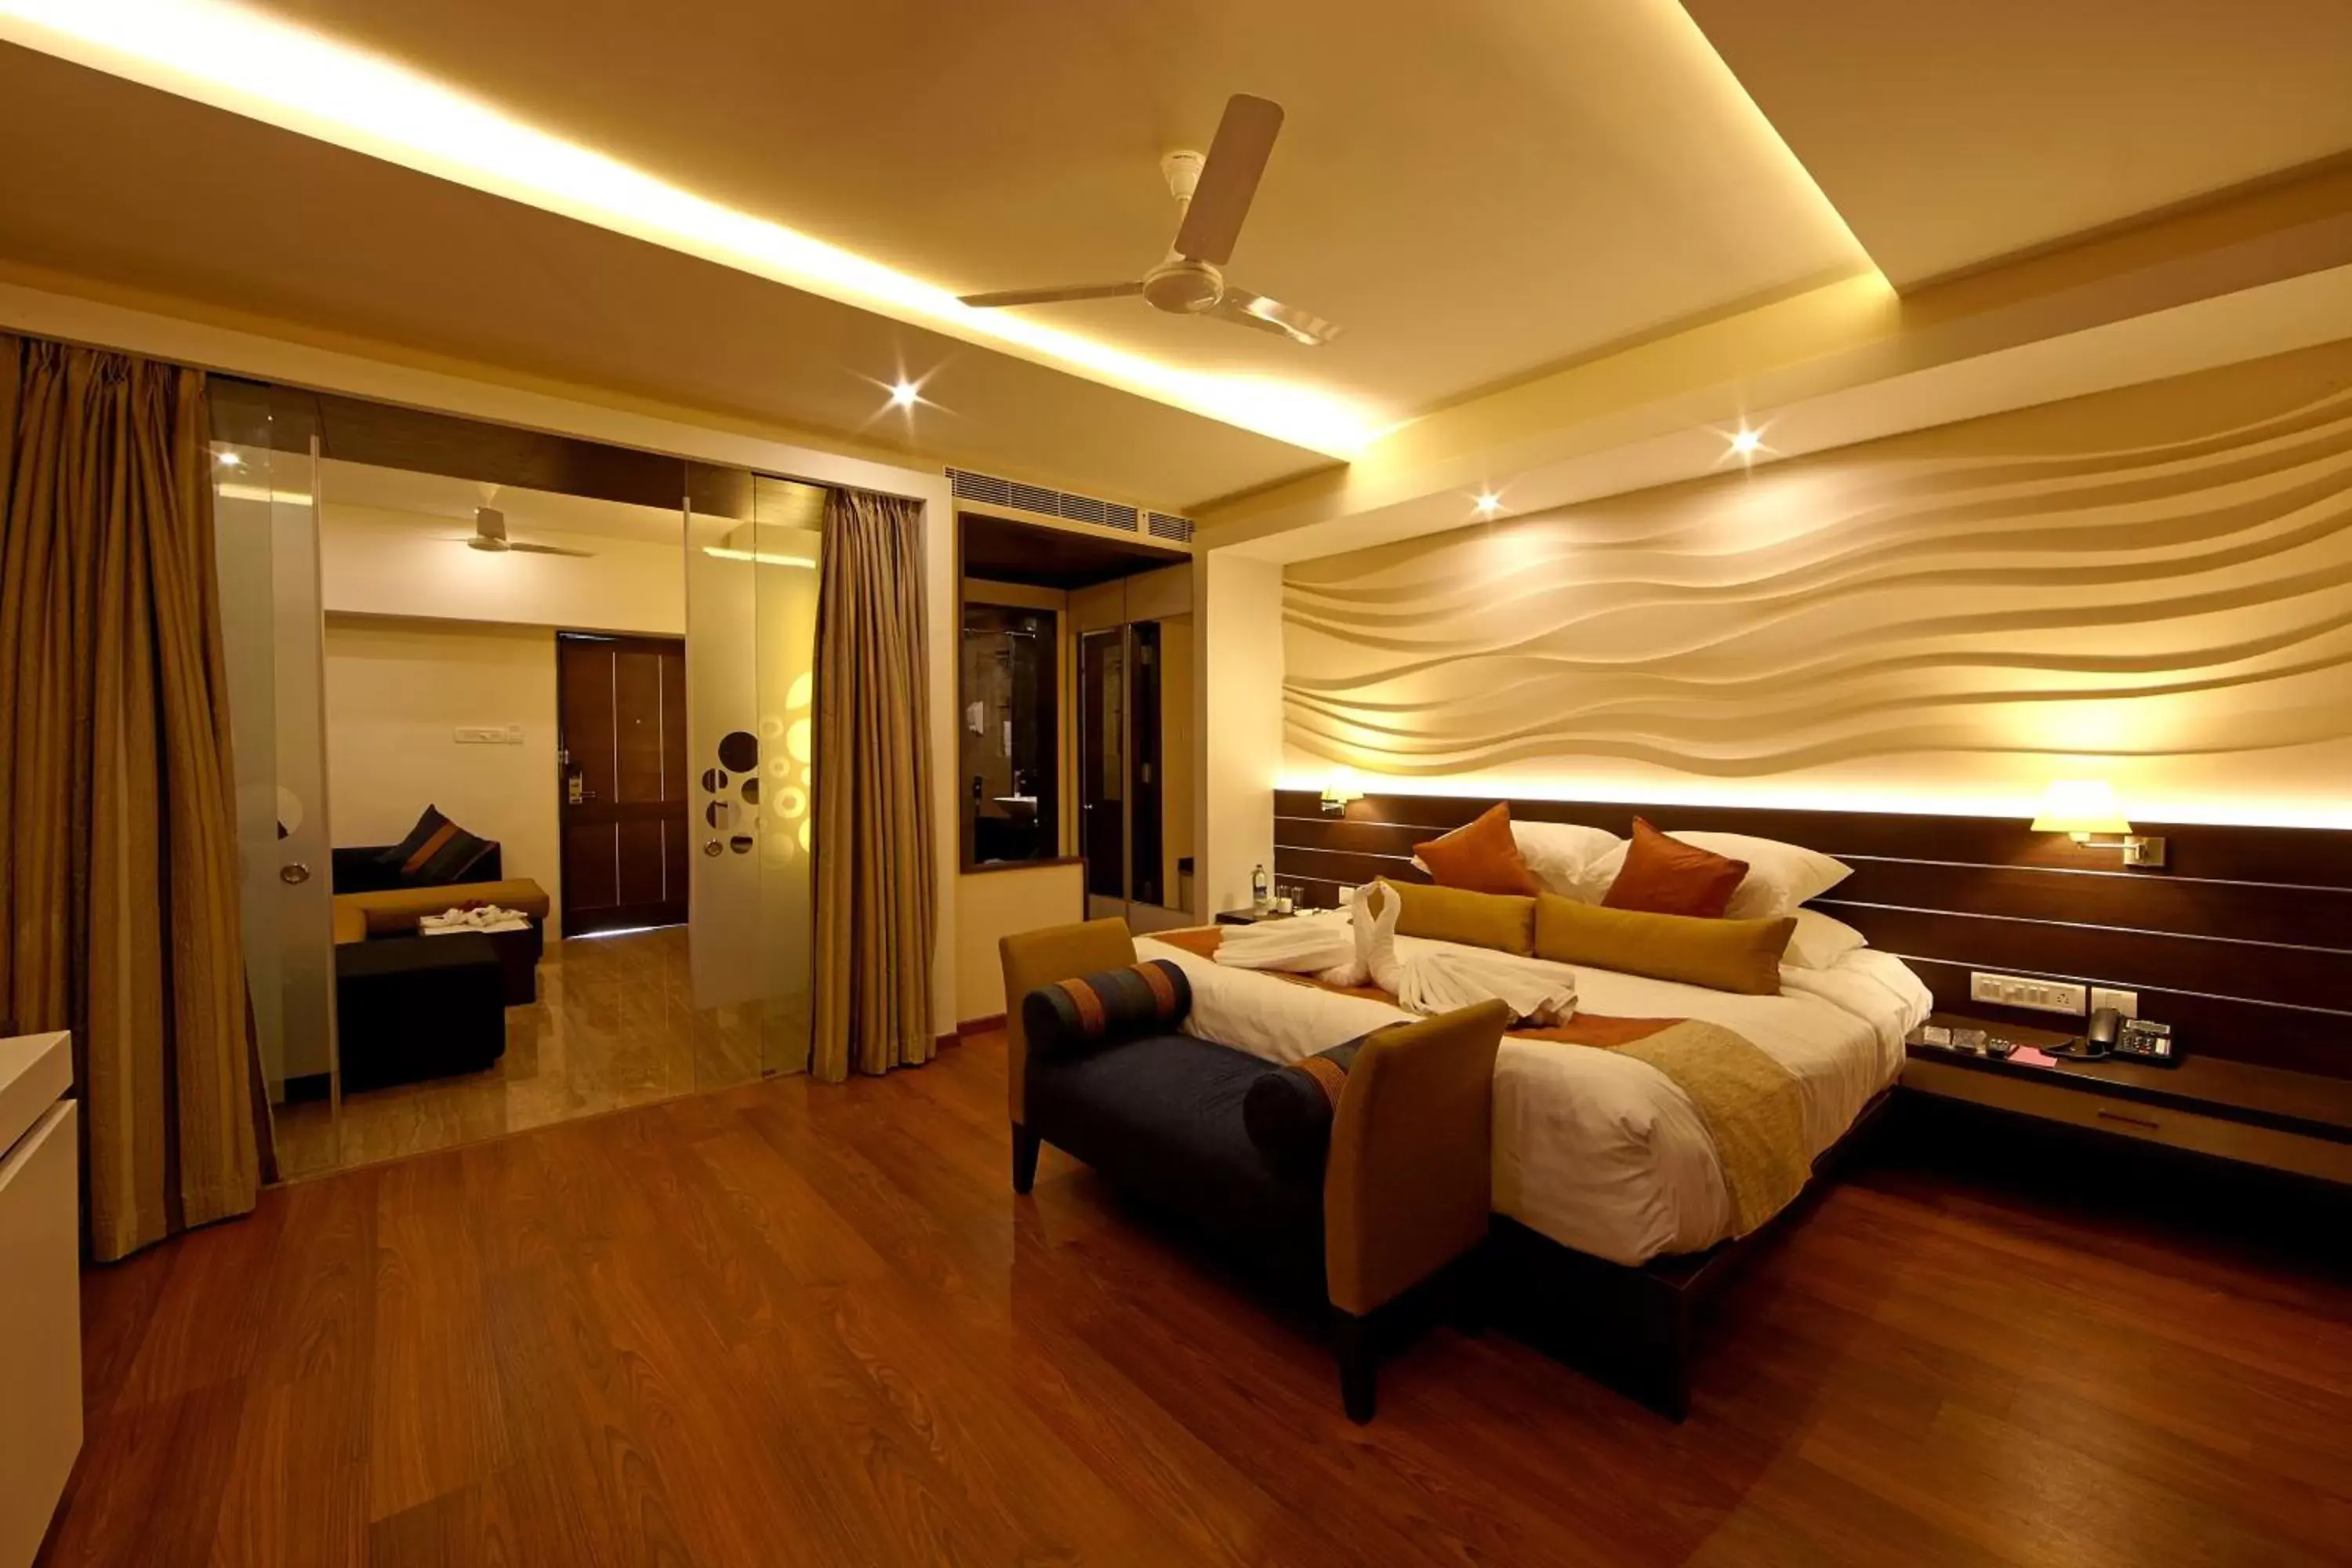 Bedroom in Golden Fruits Business Suites